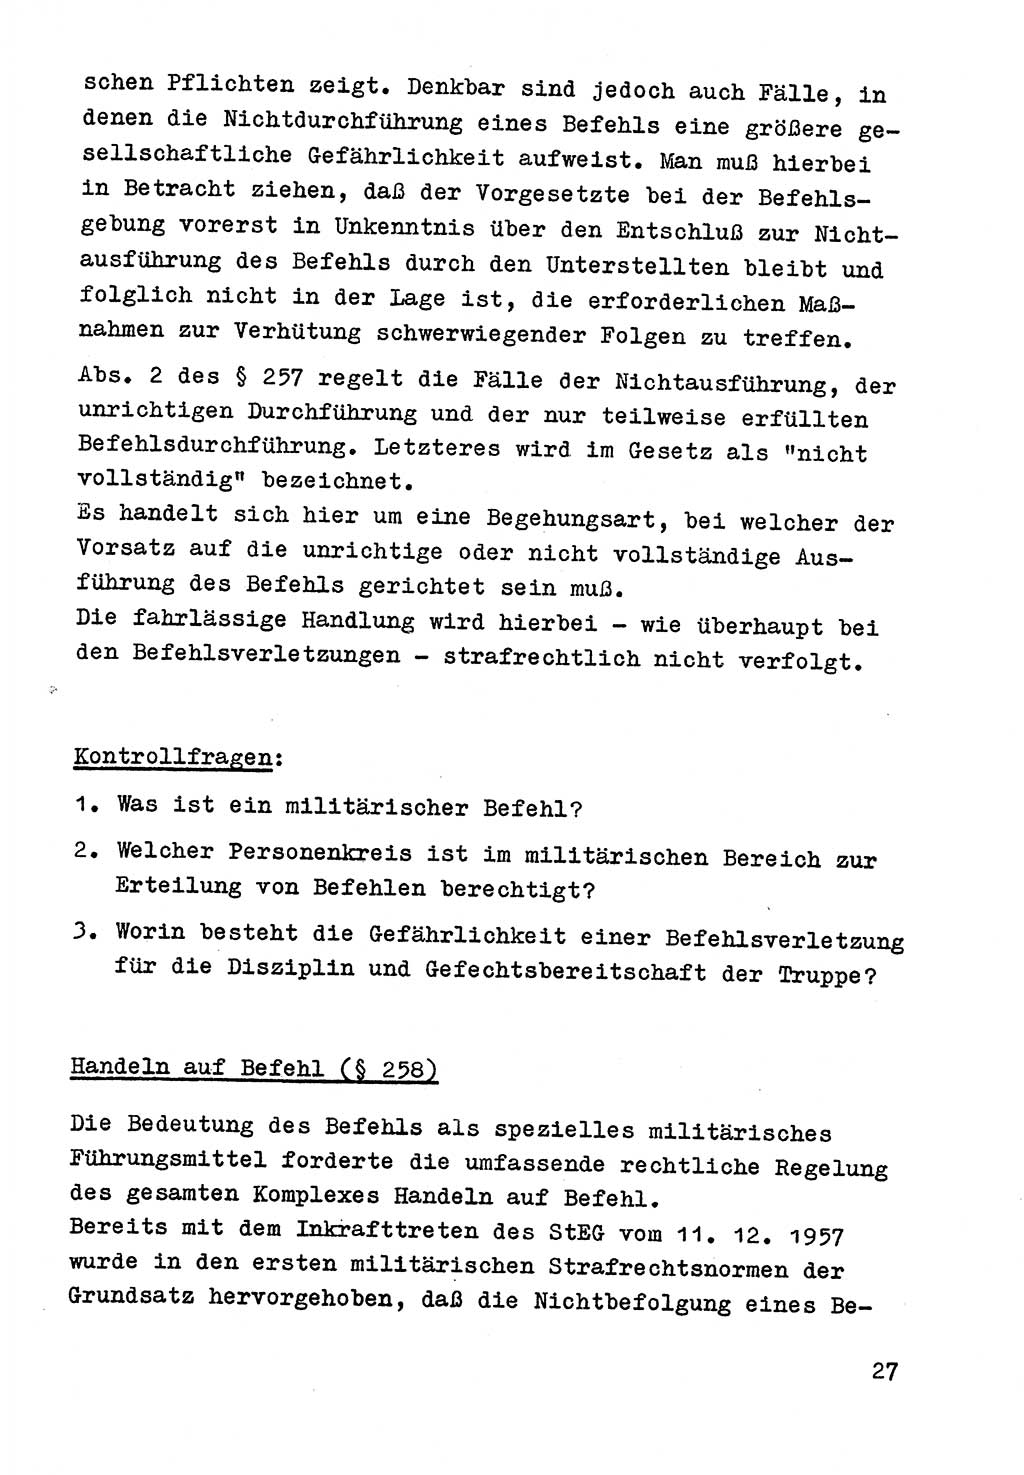 Strafrecht der DDR (Deutsche Demokratische Republik), Besonderer Teil, Lehrmaterial, Heft 9 1969, Seite 27 (Strafr. DDR BT Lehrmat. H. 9 1969, S. 27)